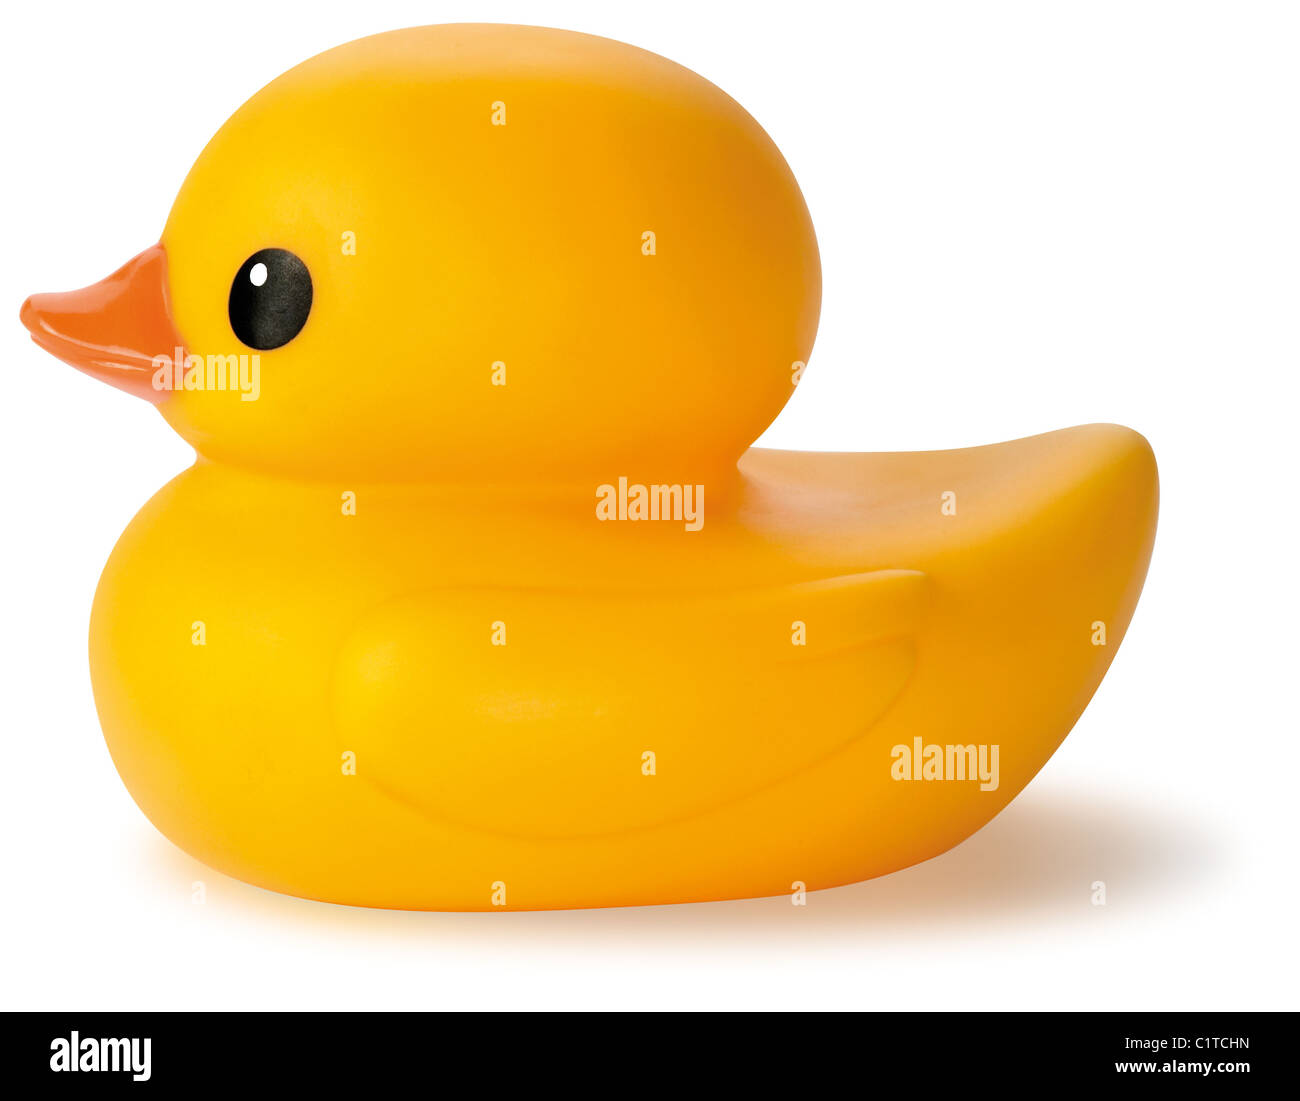 Canard en caoutchouc jaune jouet de bain enfant isolé sur fond blanc Banque D'Images